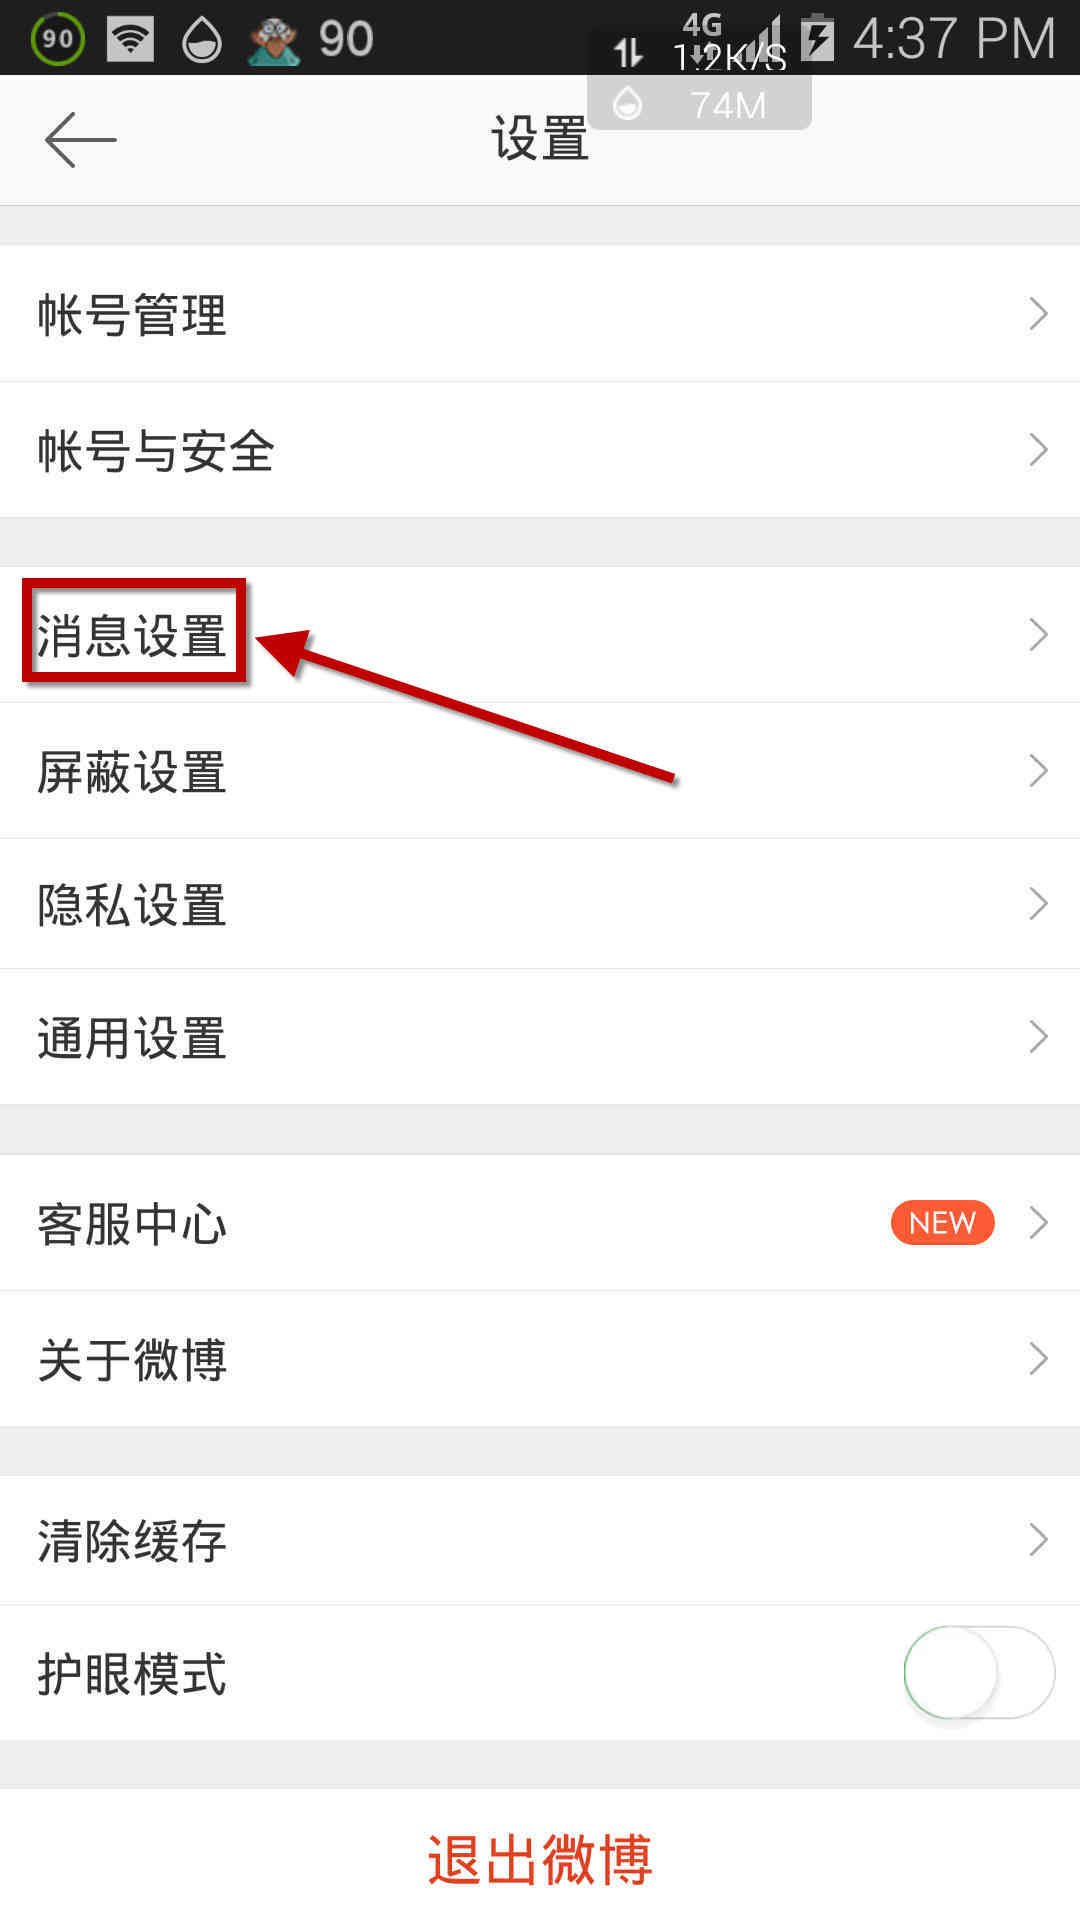 Tsindrio ny "Message Settings" ao amin'ny Weibo. Sary 3